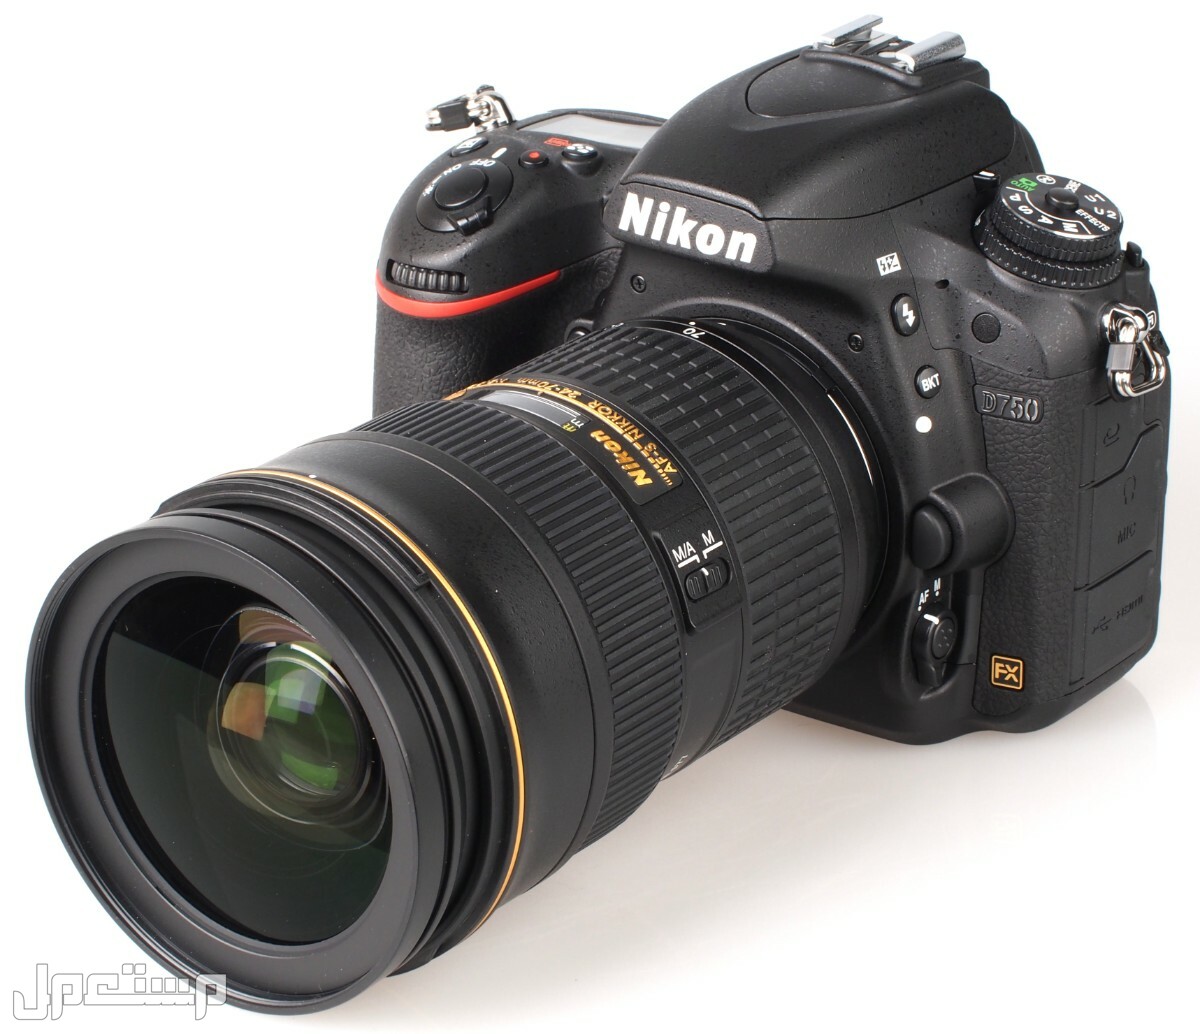 مواصفات ومميزات وأسعار أفضل أنواع كاميرات نيكون للمحترفين في البحرين كاميرا Nikon D750